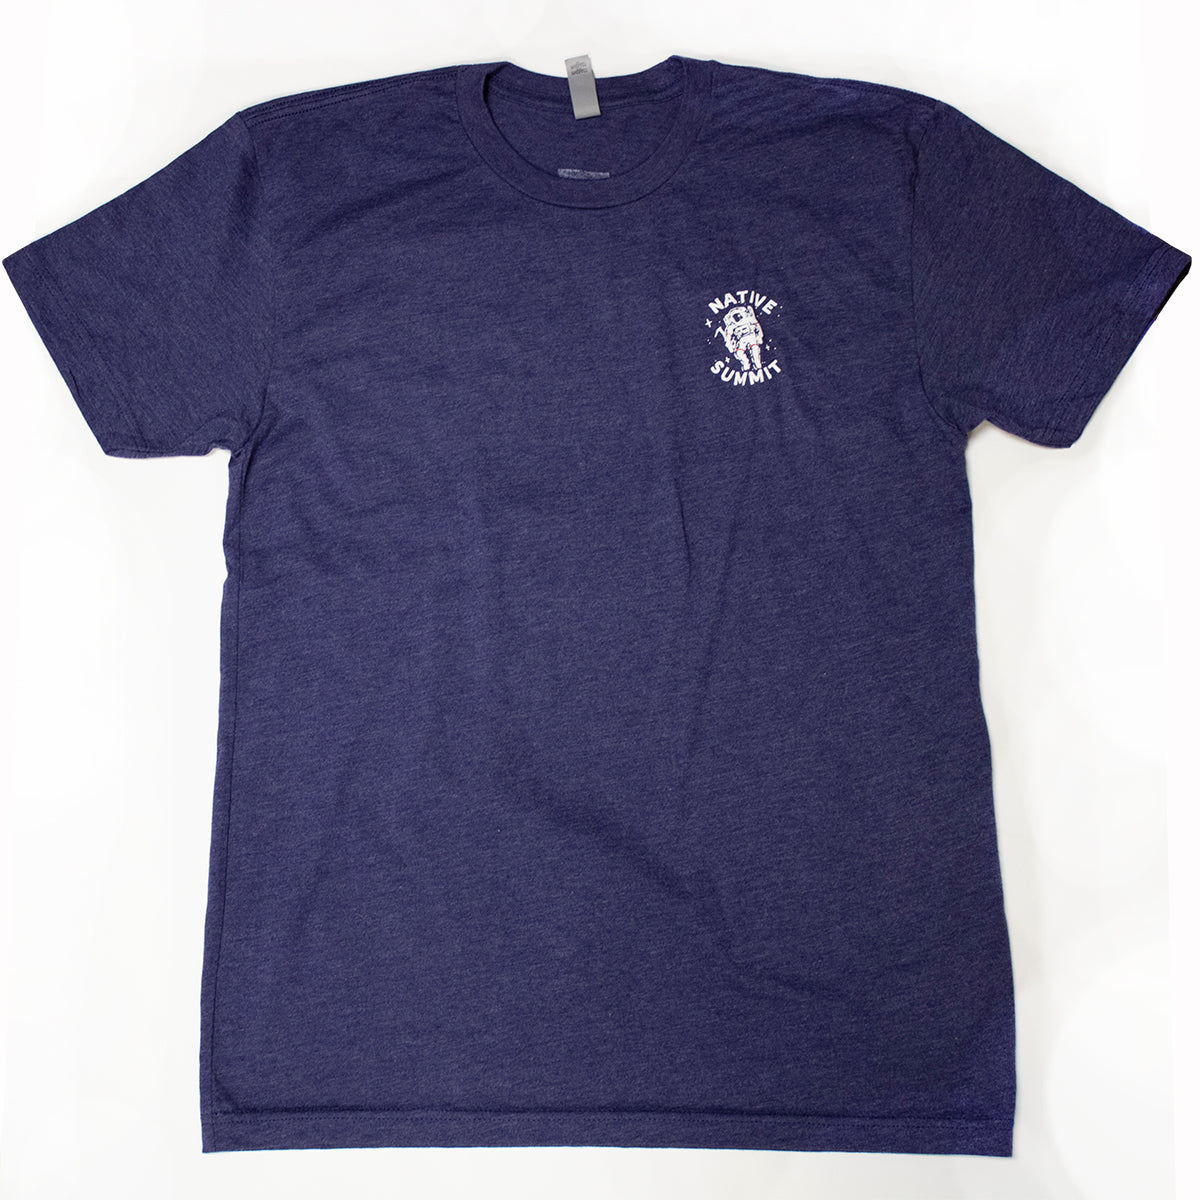 NS Astronaut SS T-Shirt